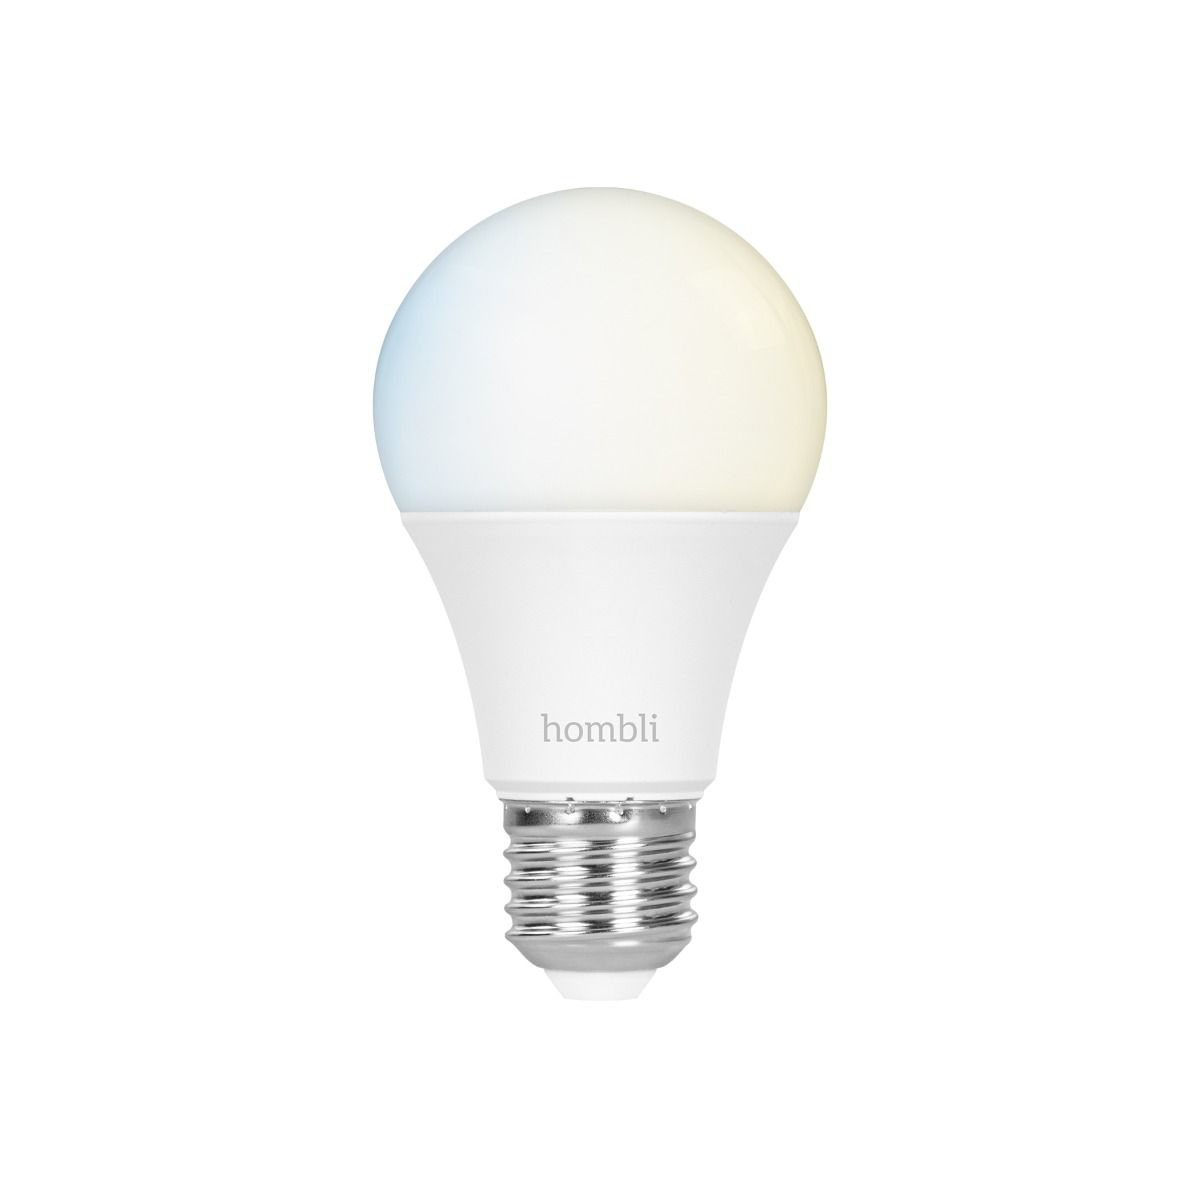 Hombli Smart Bulb E27